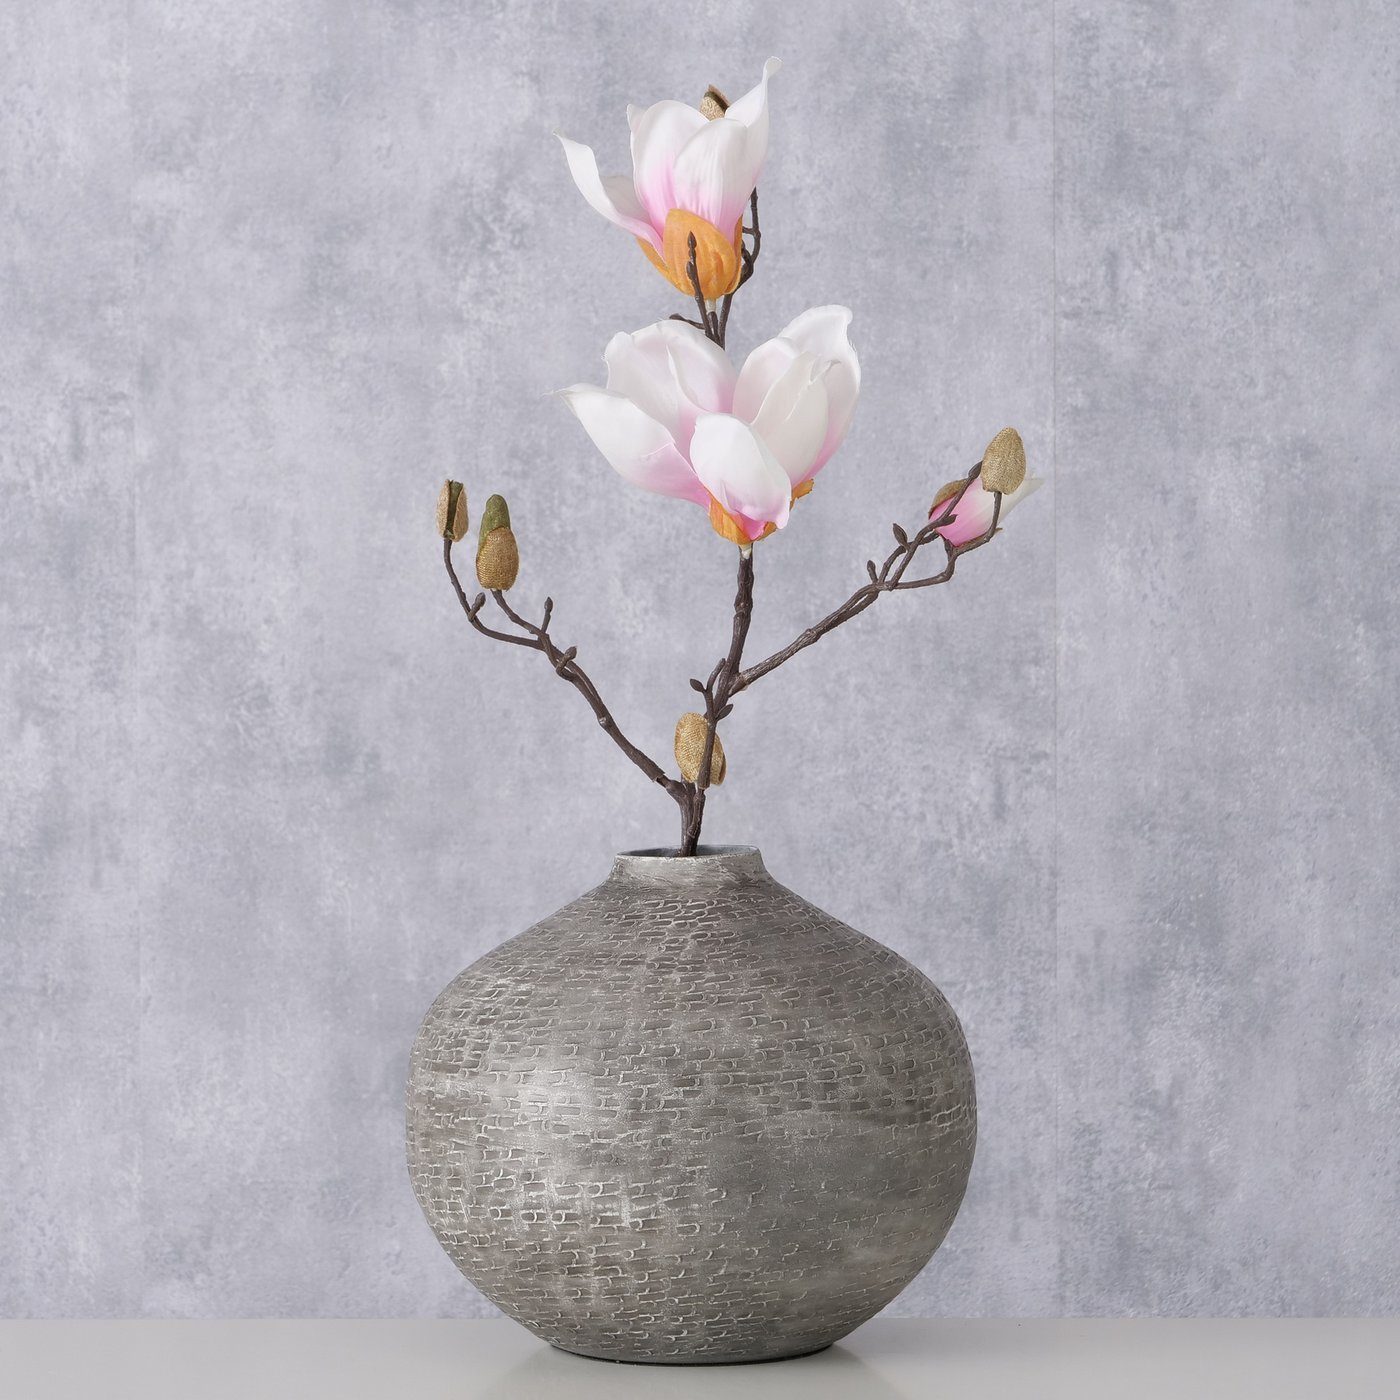 BOLTZE Dekovase "Tanish" aus Metall in grau, Vase Blumenvase